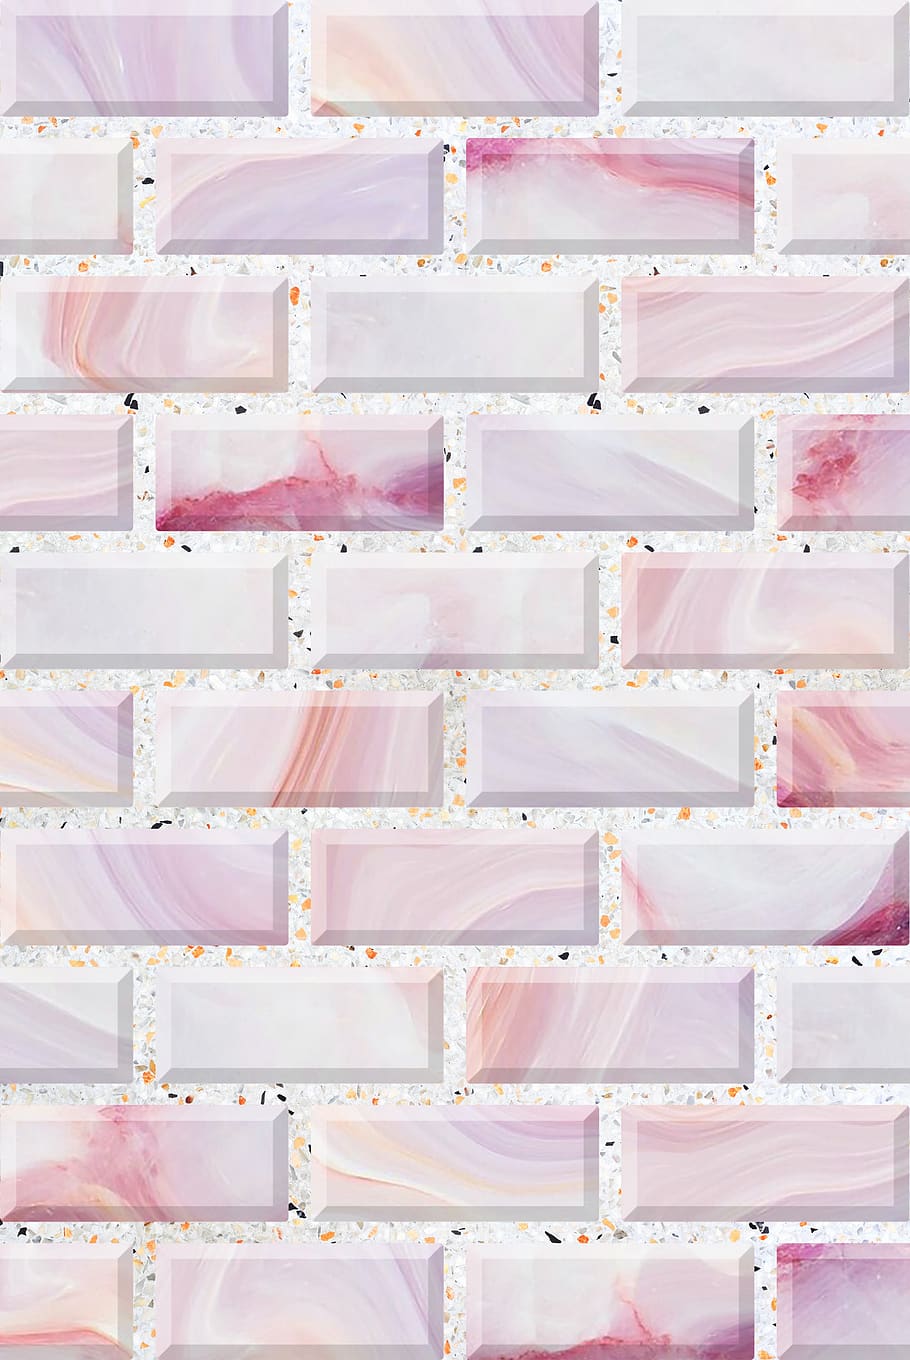 parede, papel de parede, azulejo, textura, cor rosa, em uma fileira, ninguém, arranjo, ordem, dentro de casa